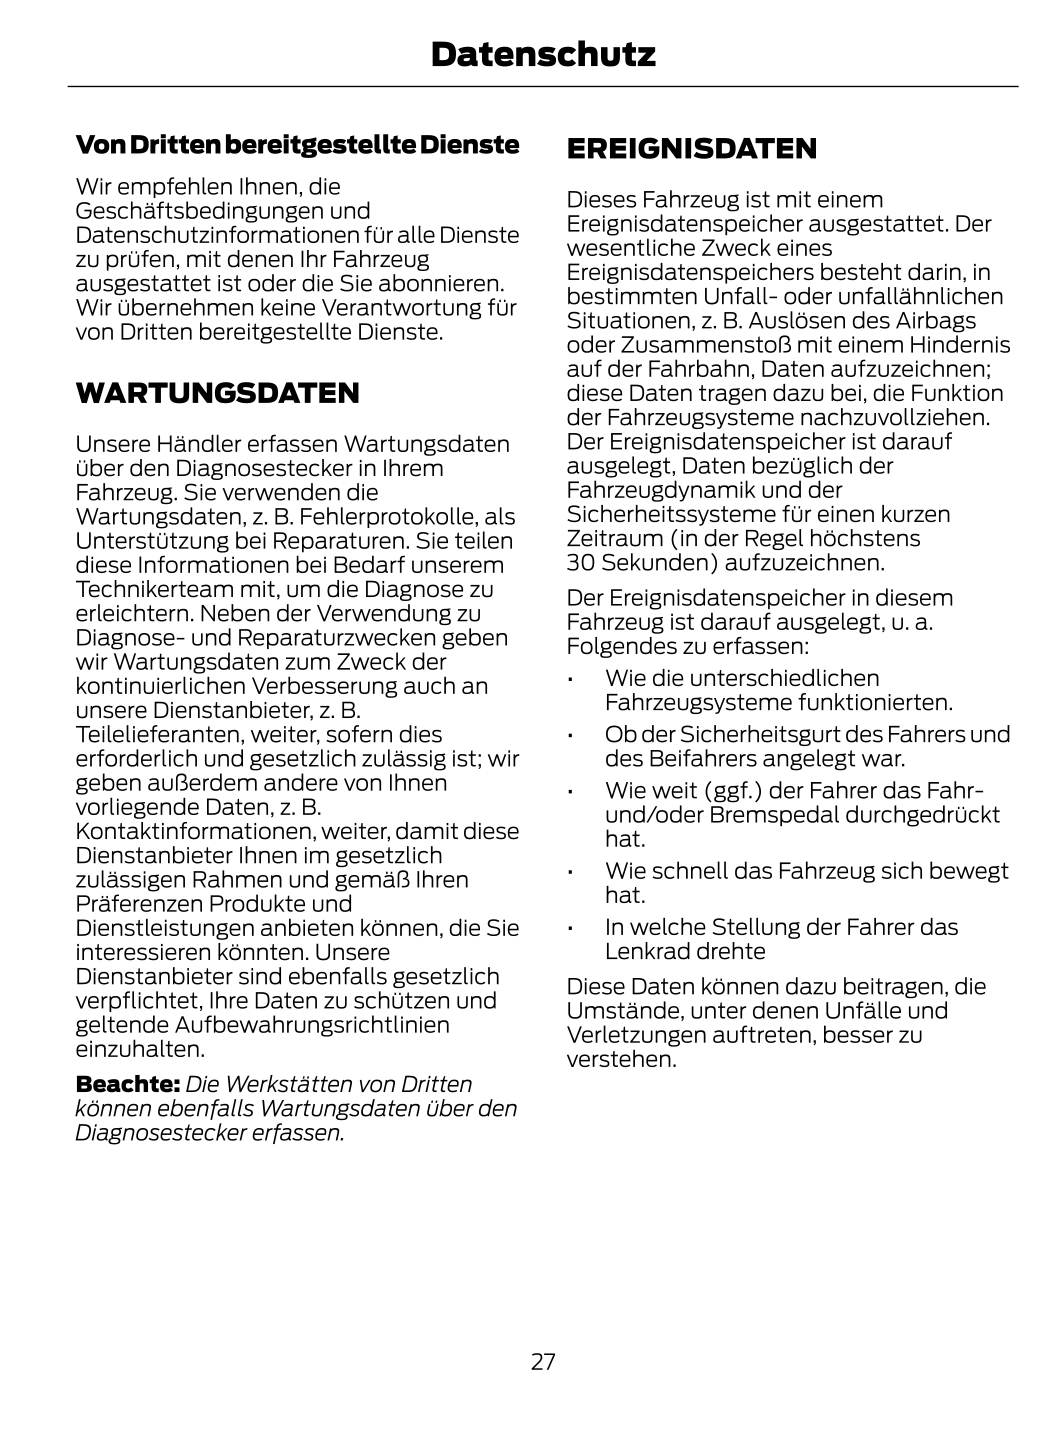 2022-2024 Ford Kuga Owner's Manual | German